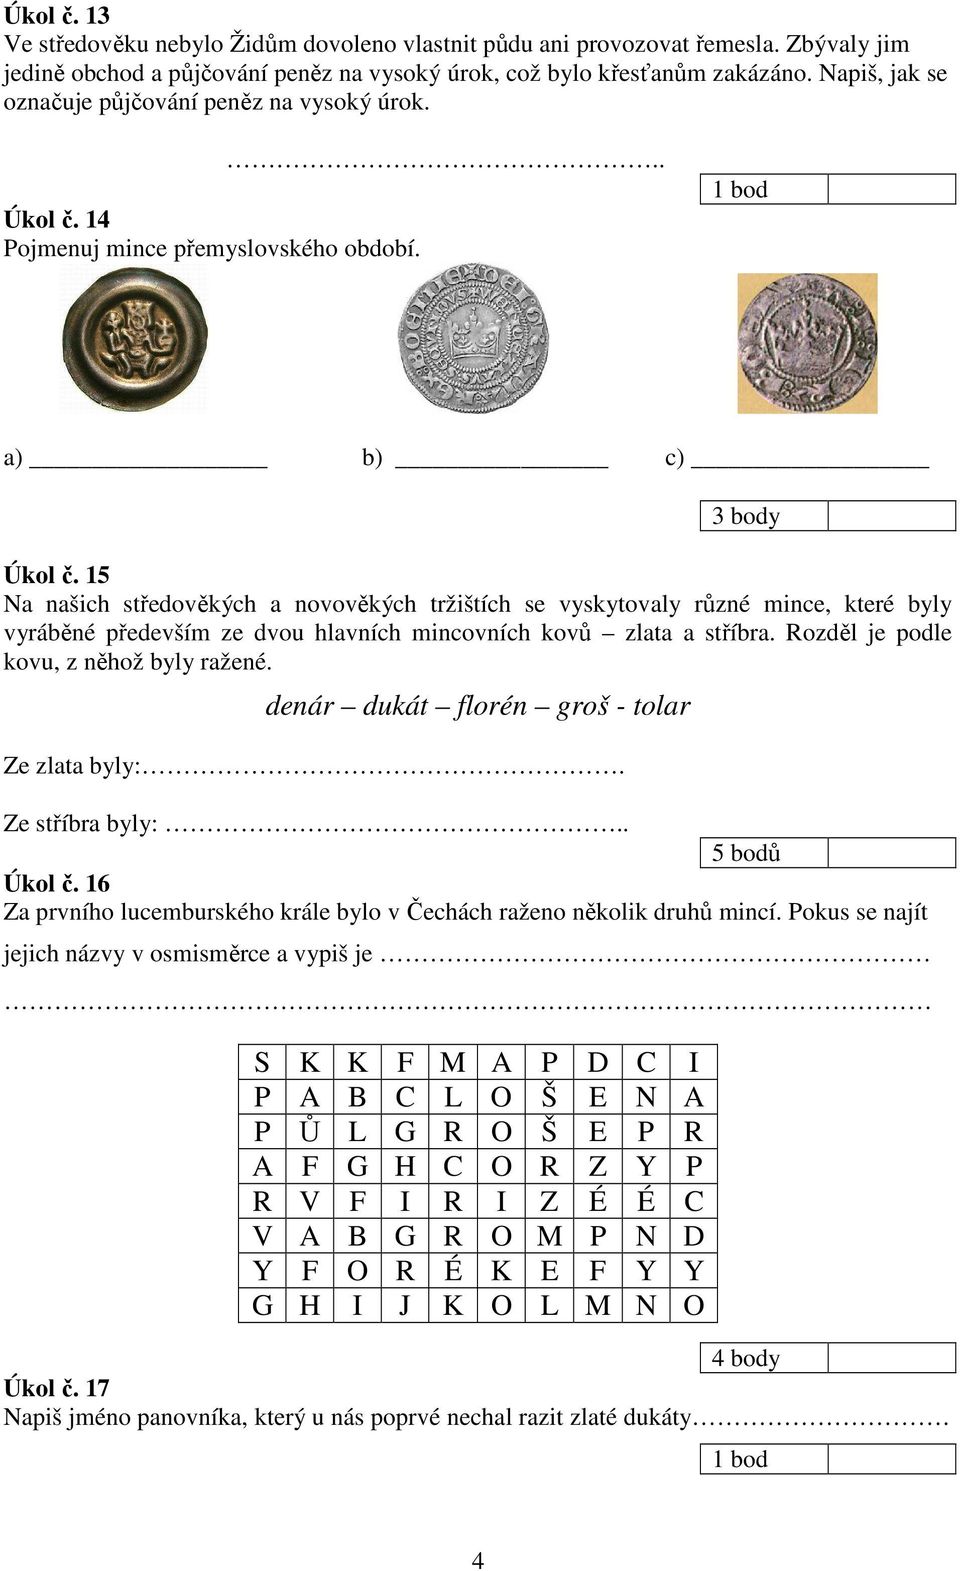 15 Na našich středověkých a novověkých tržištích se vyskytovaly různé mince, které byly vyráběné především ze dvou hlavních mincovních kovů zlata a stříbra. Rozděl je podle kovu, z něhož byly ražené.